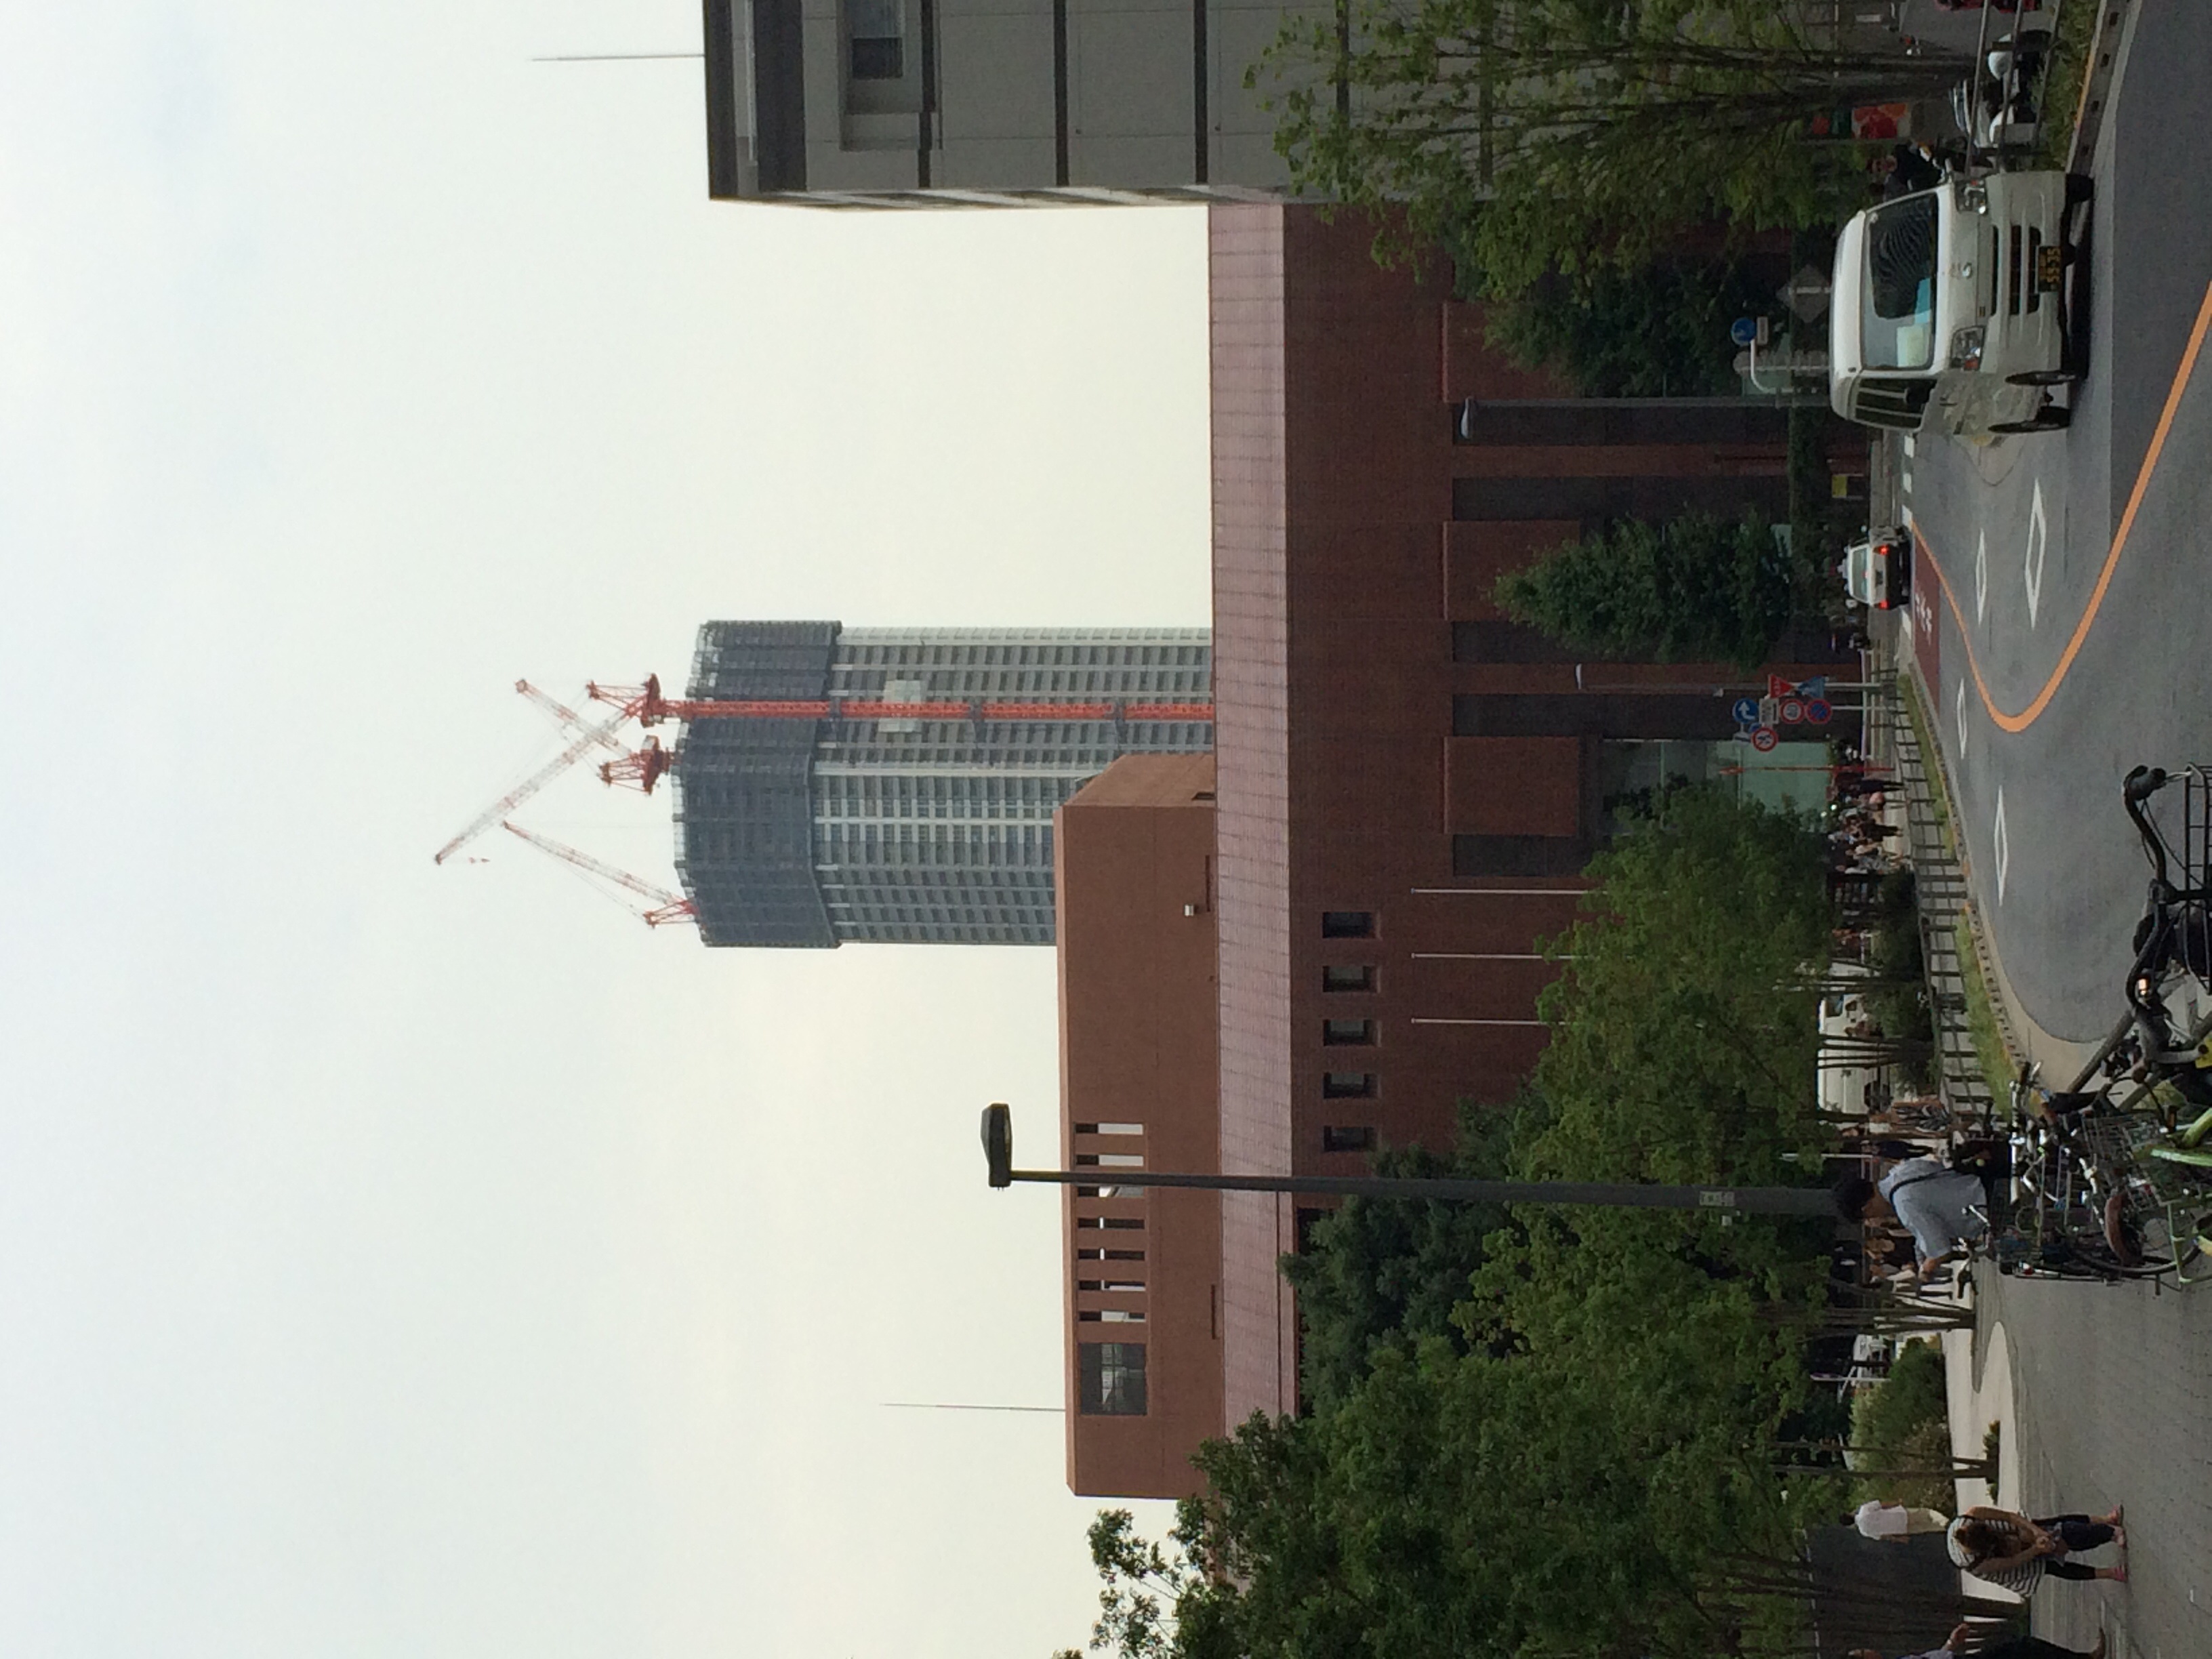 東新宿駅近辺からの写真。本日午後3時頃。